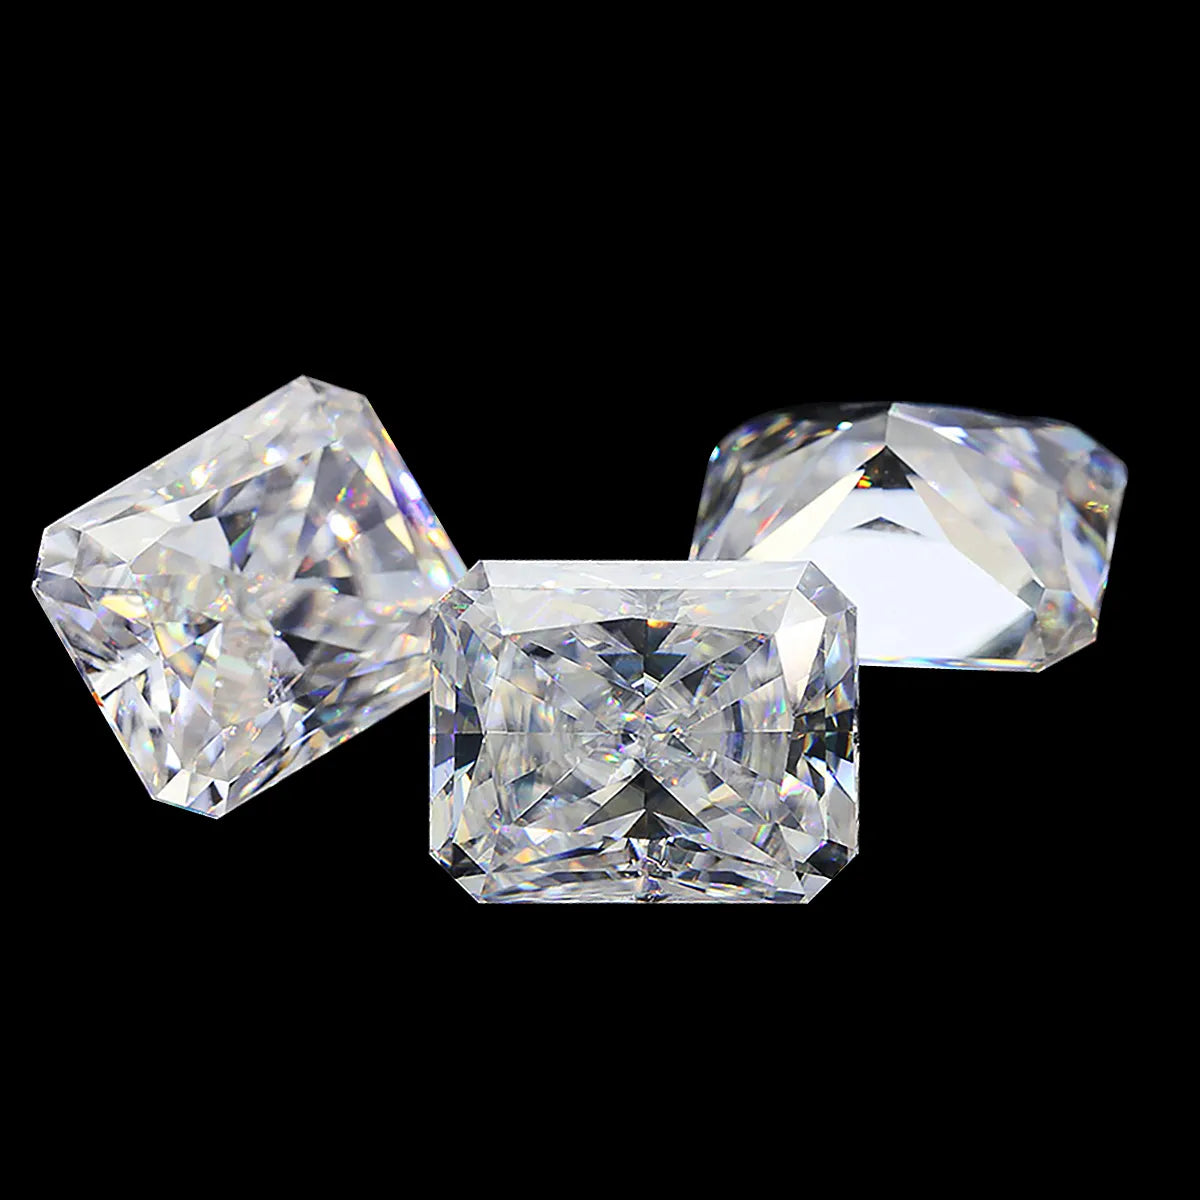 Loose Diamond 0.52 Carat. Radiant Cut. E VS1 - IGI Certified